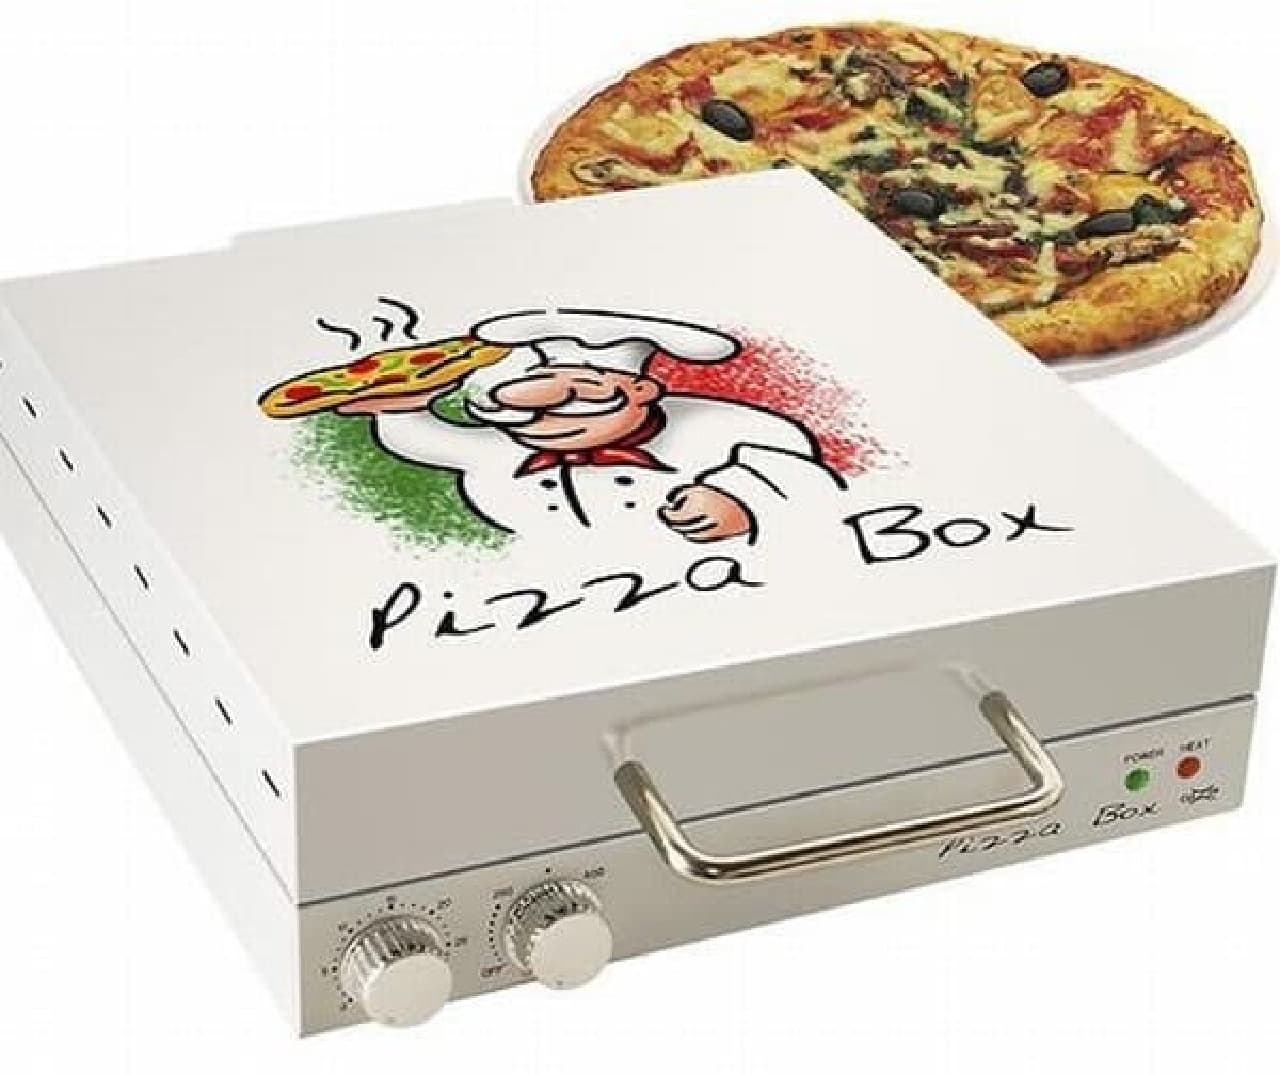 ピザ専用電気オーブン「Pizza Box Oven」